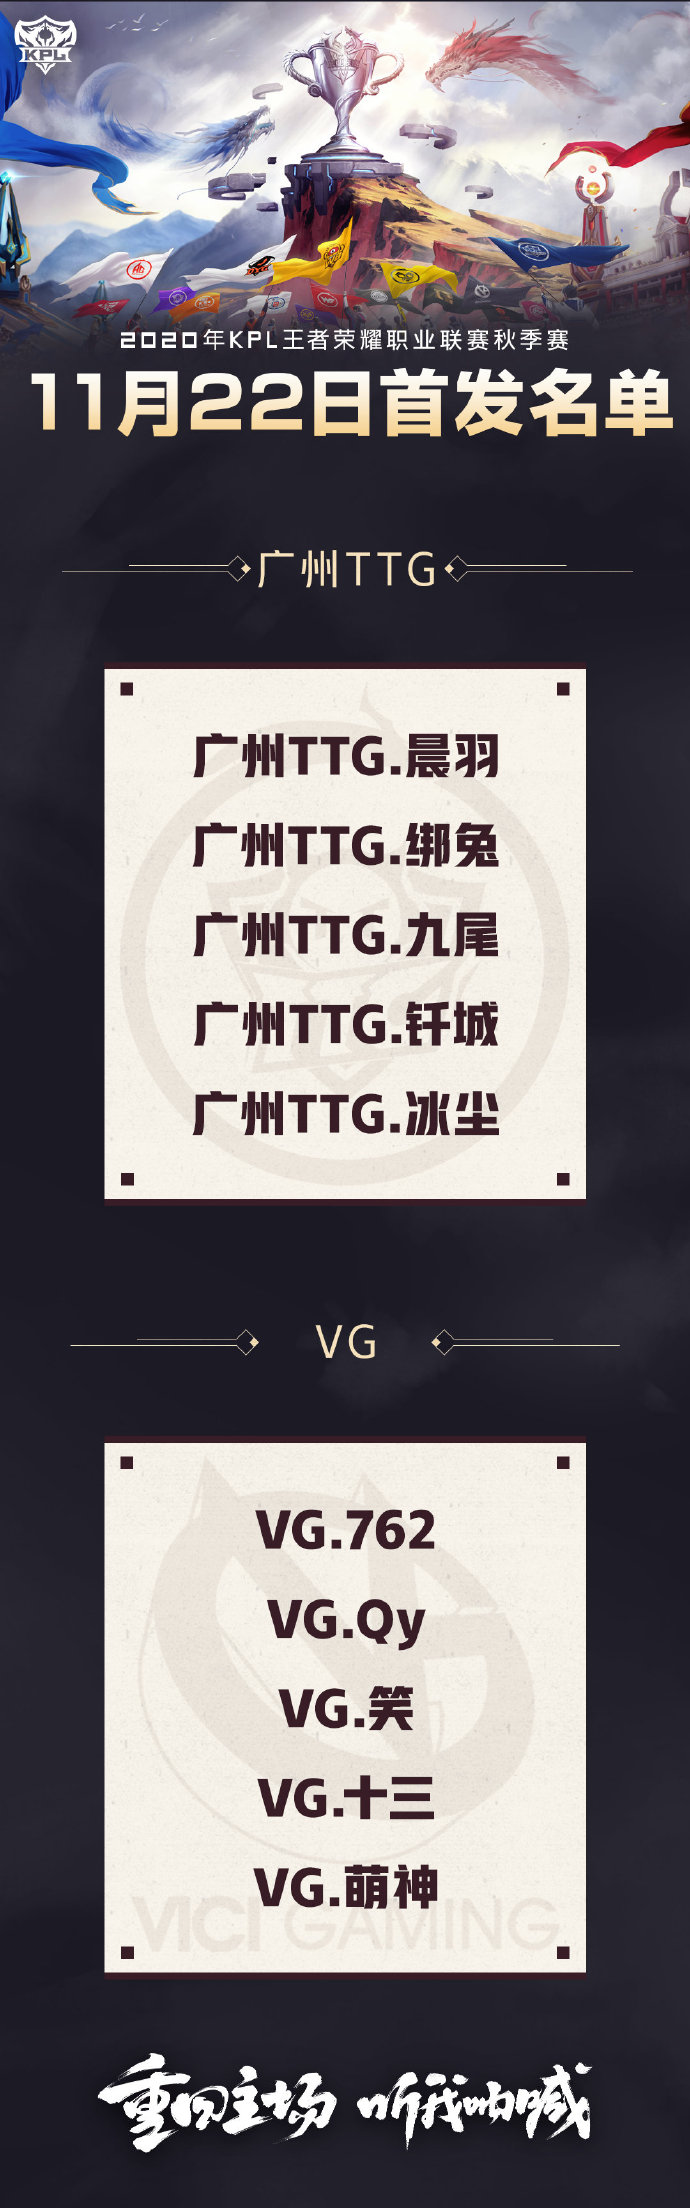 [今日首发] 广州TTG与VG生死大战 杭州LGD大鹅力争胜者组名额